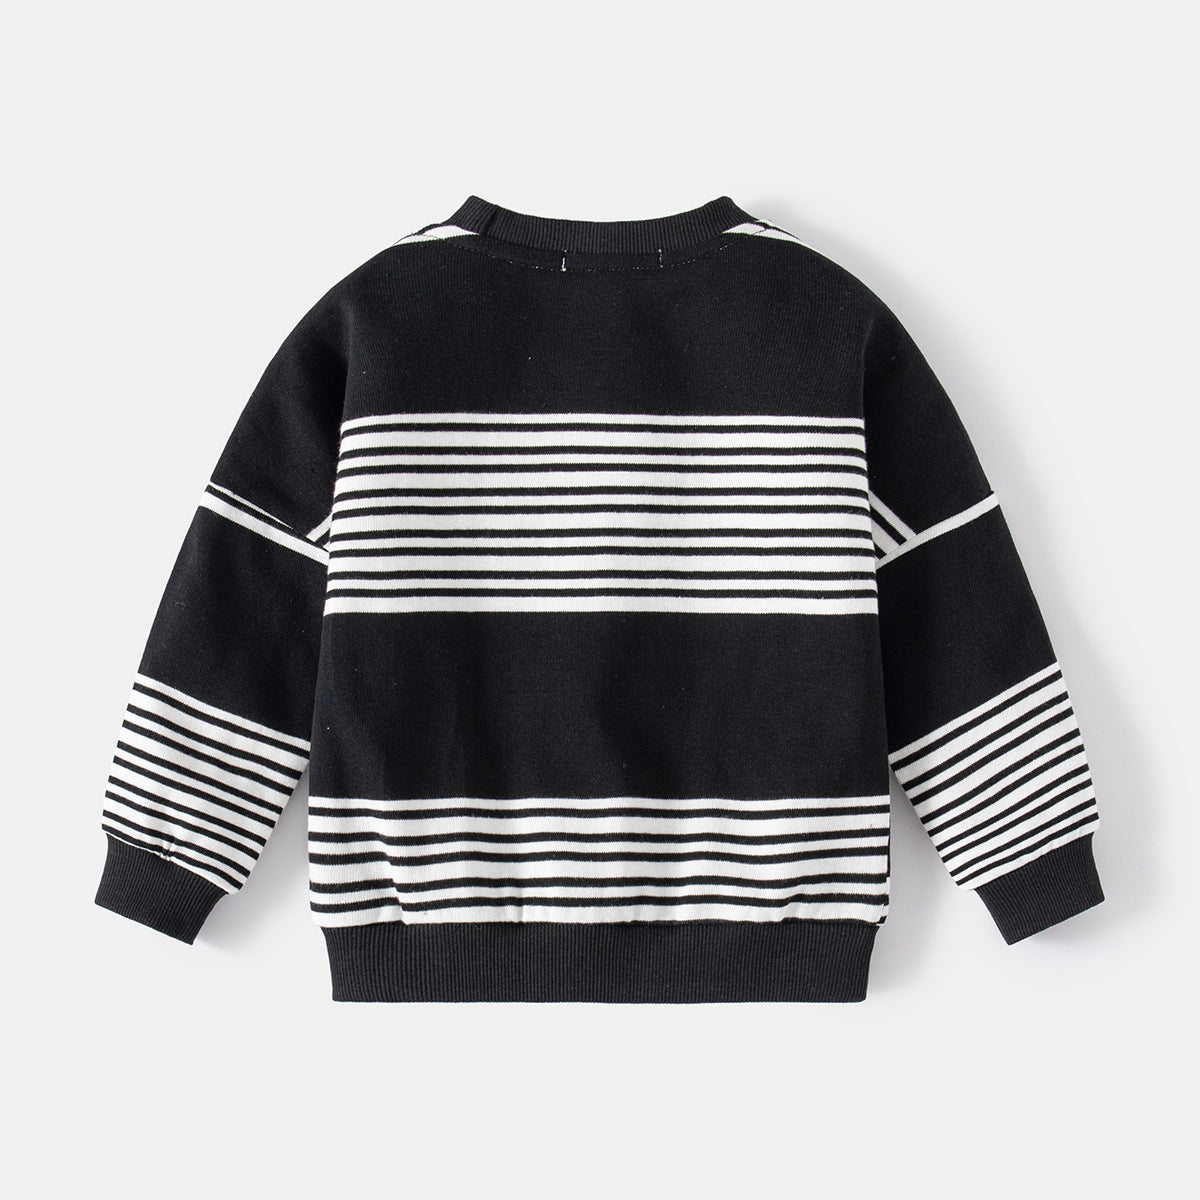 [513732] - Atasan Sweater Lengan Panjang Import Anak Laki-Laki - Motif Plain Stripe